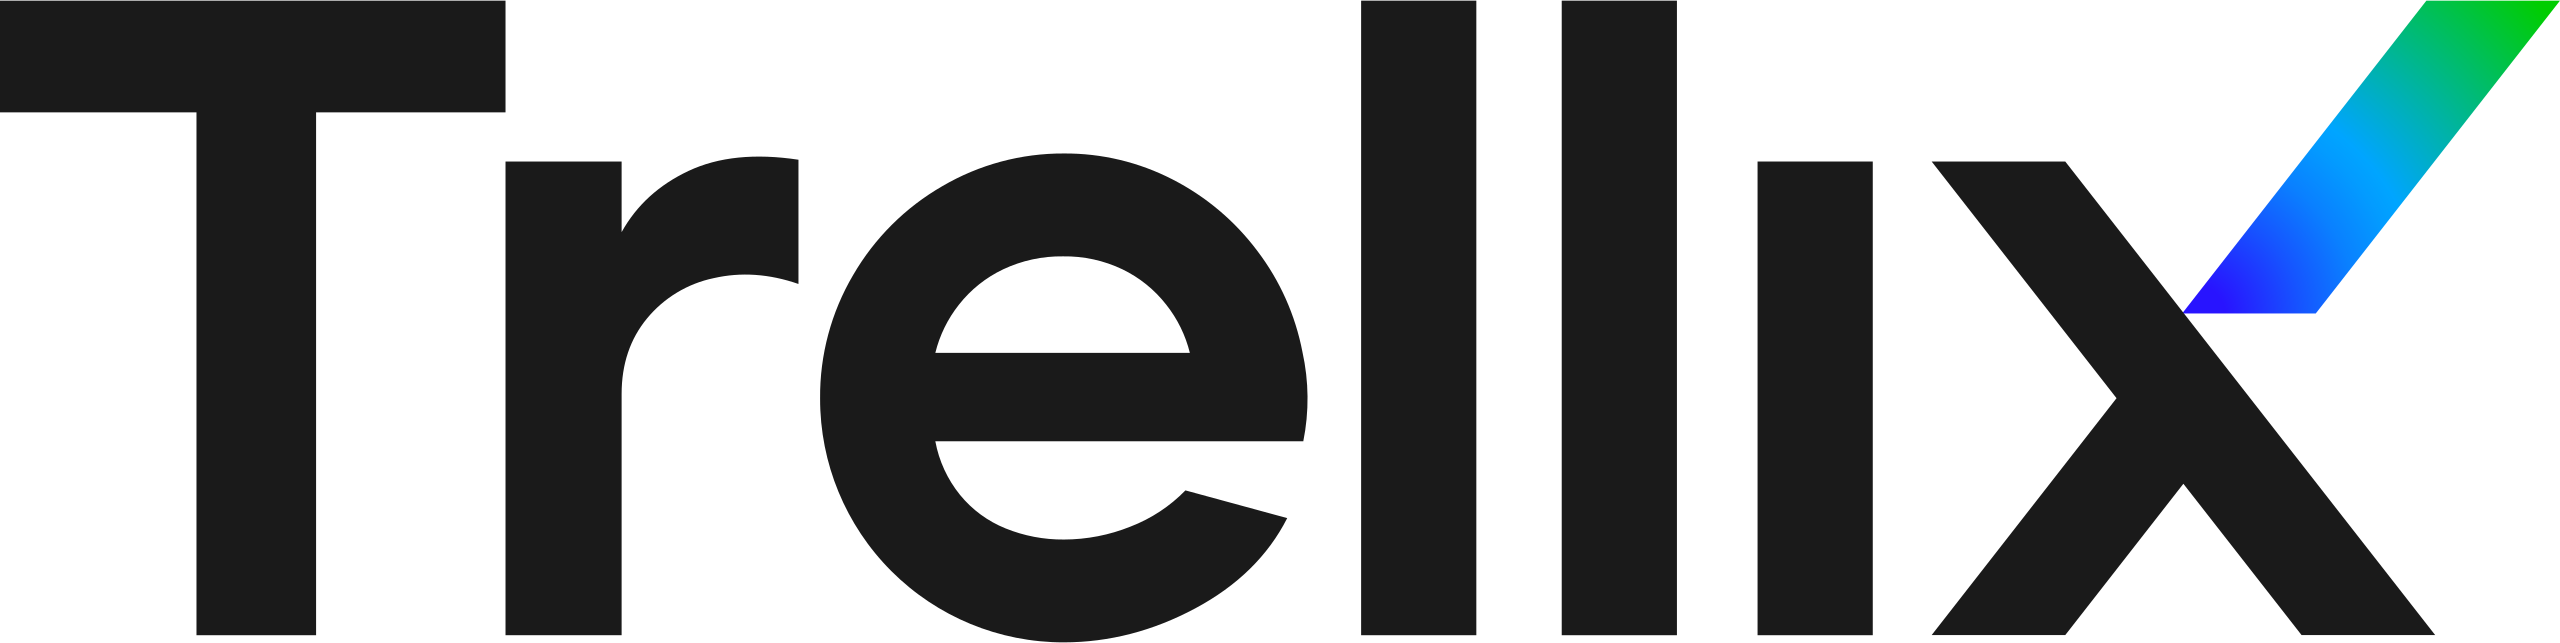 Trellix - logo